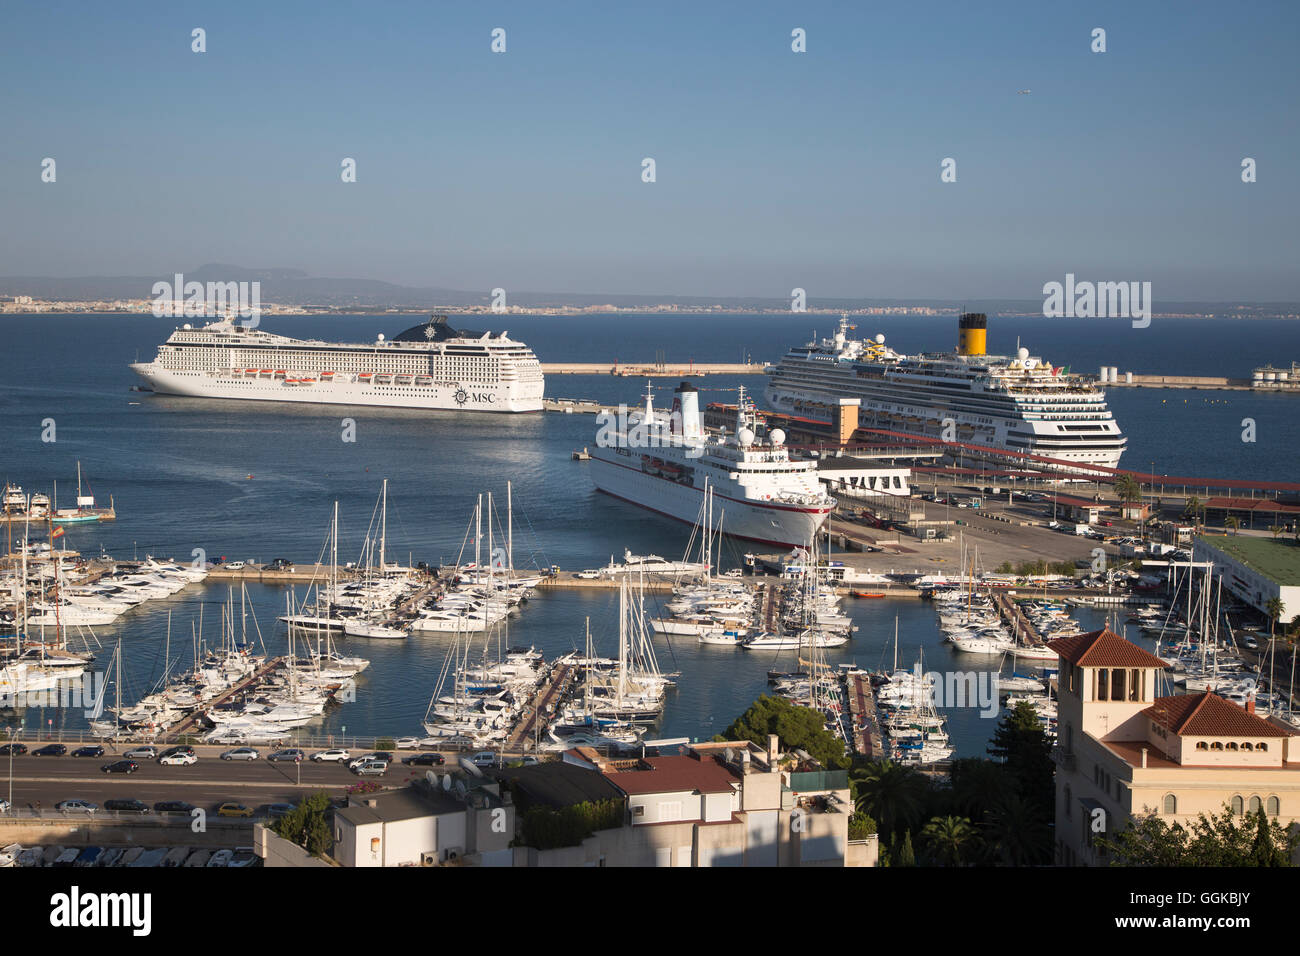 Les navires de croisière MS Deutschland (Peter Deilmann Reederei), MSC Musica (MSC) et le Costa Favolosa (Costa Crociere) à Palma Cru Banque D'Images